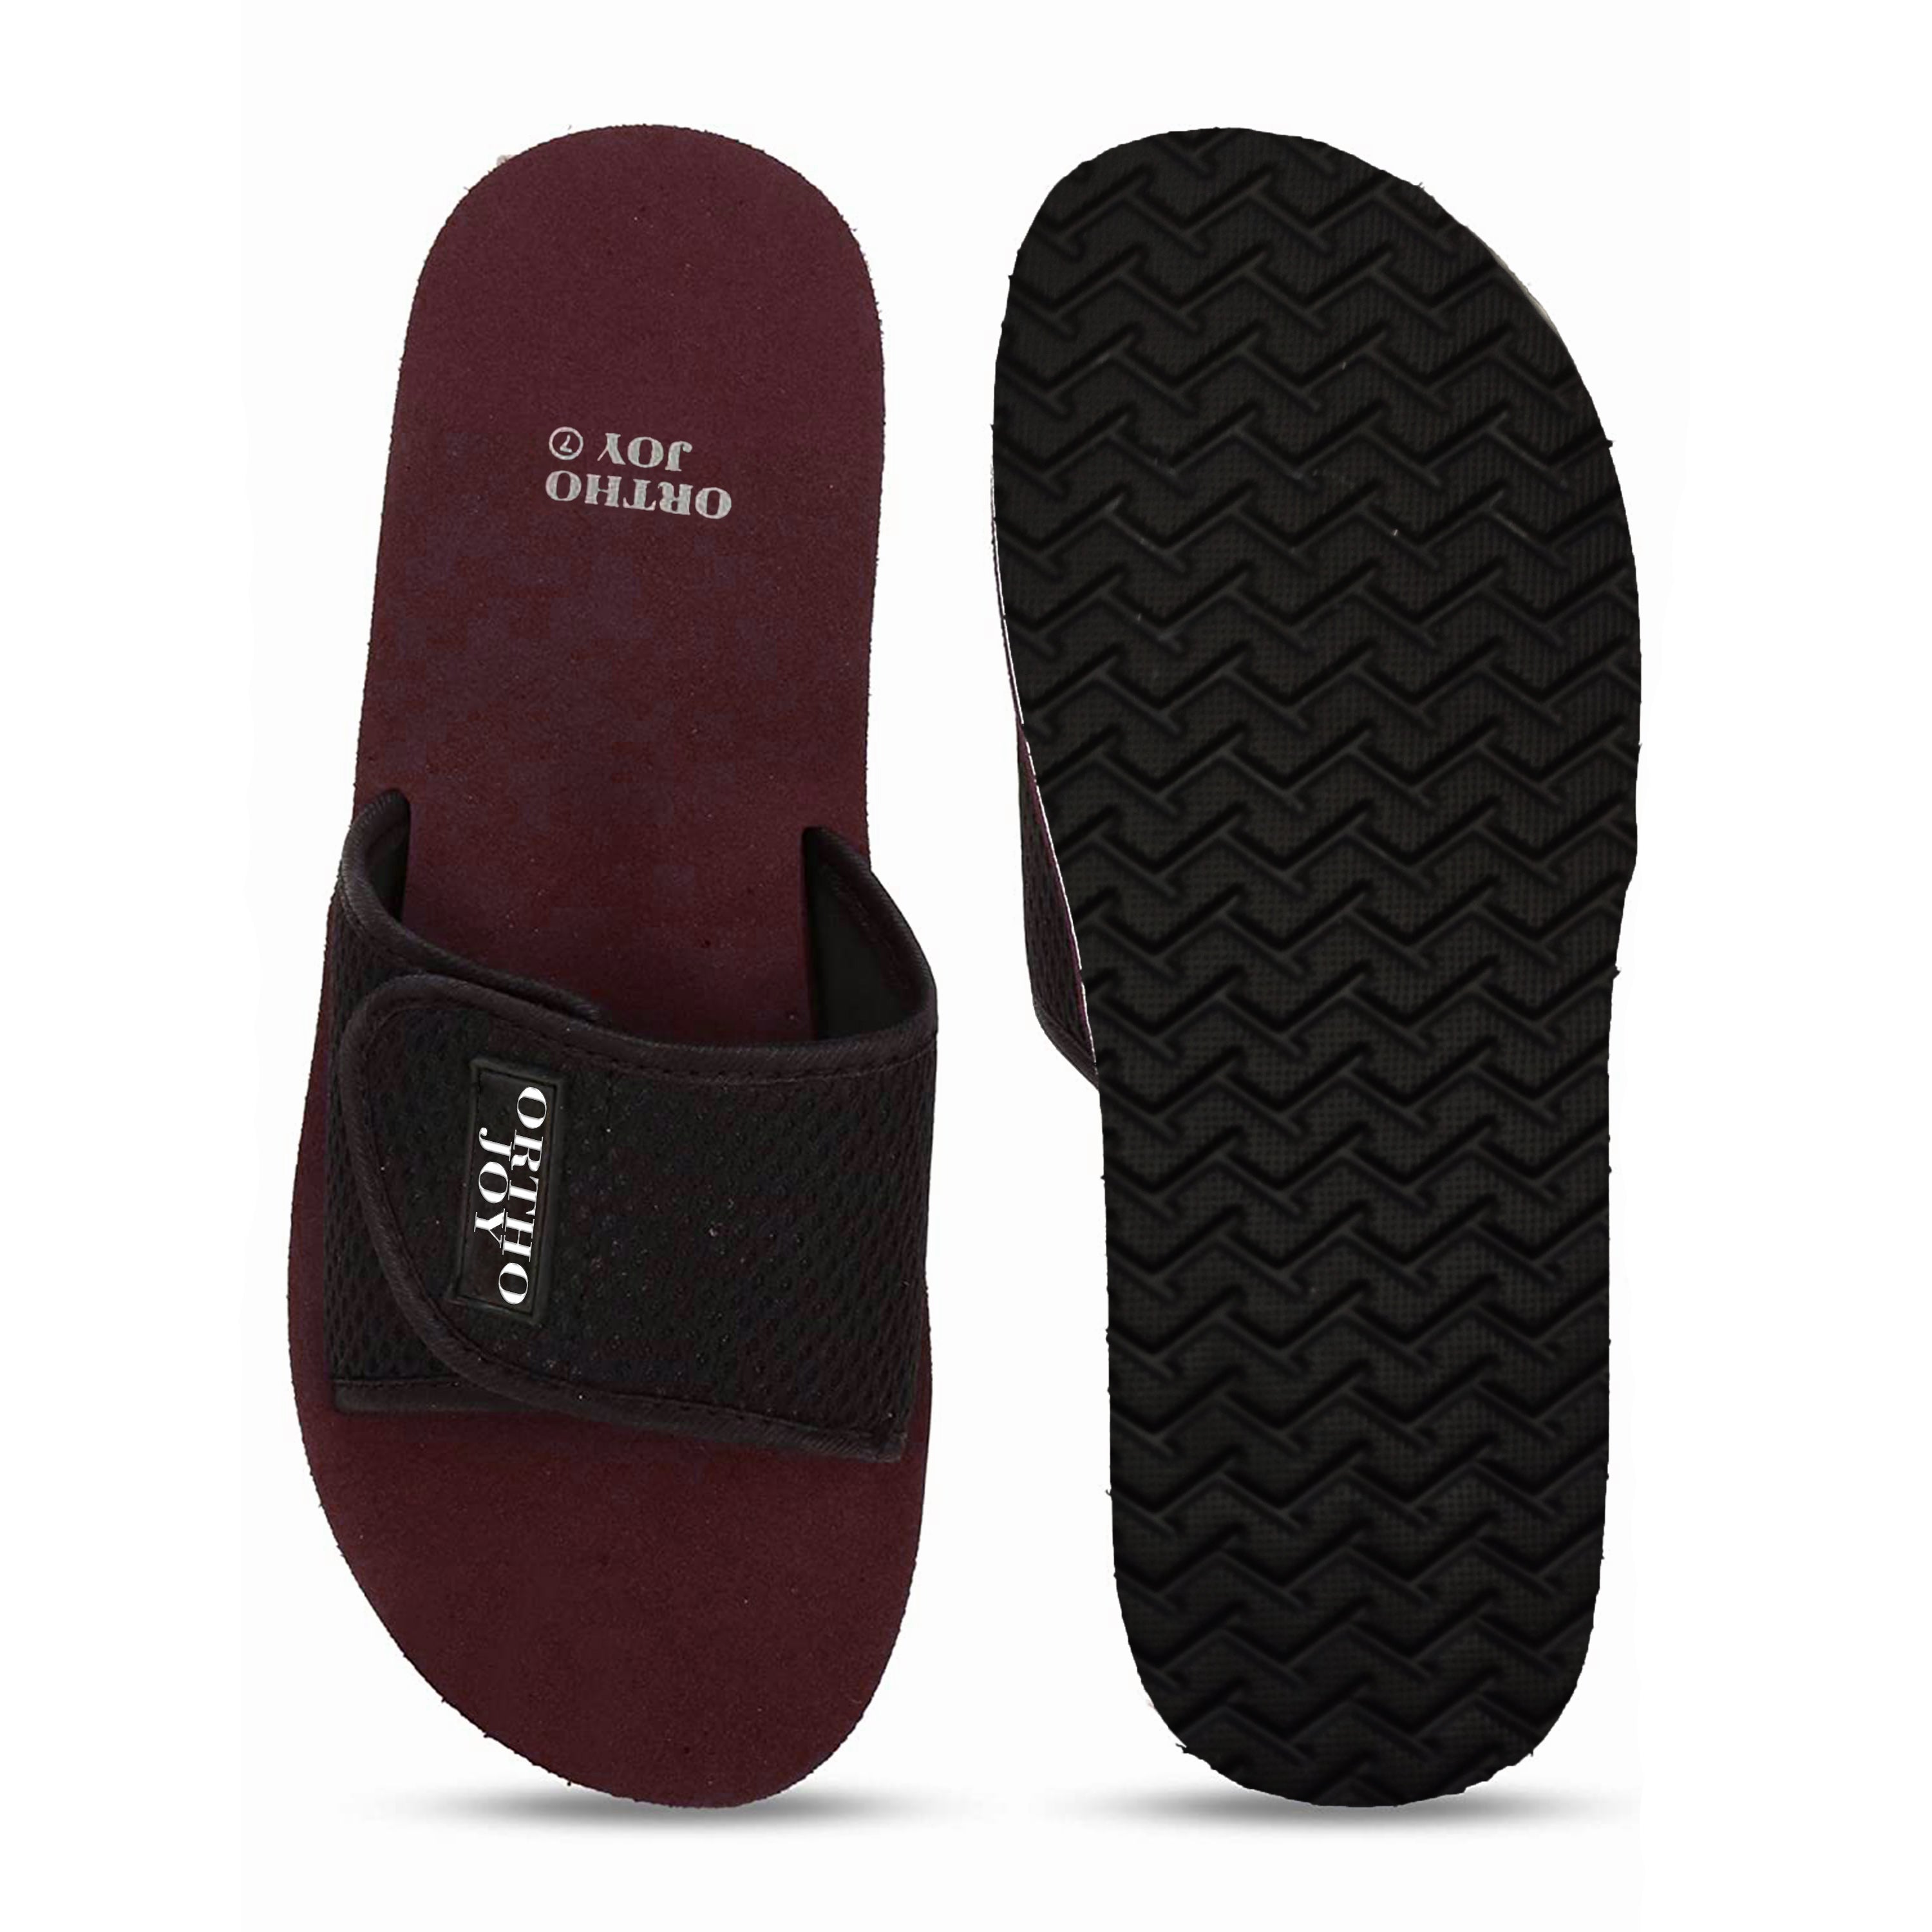 ortho slippers